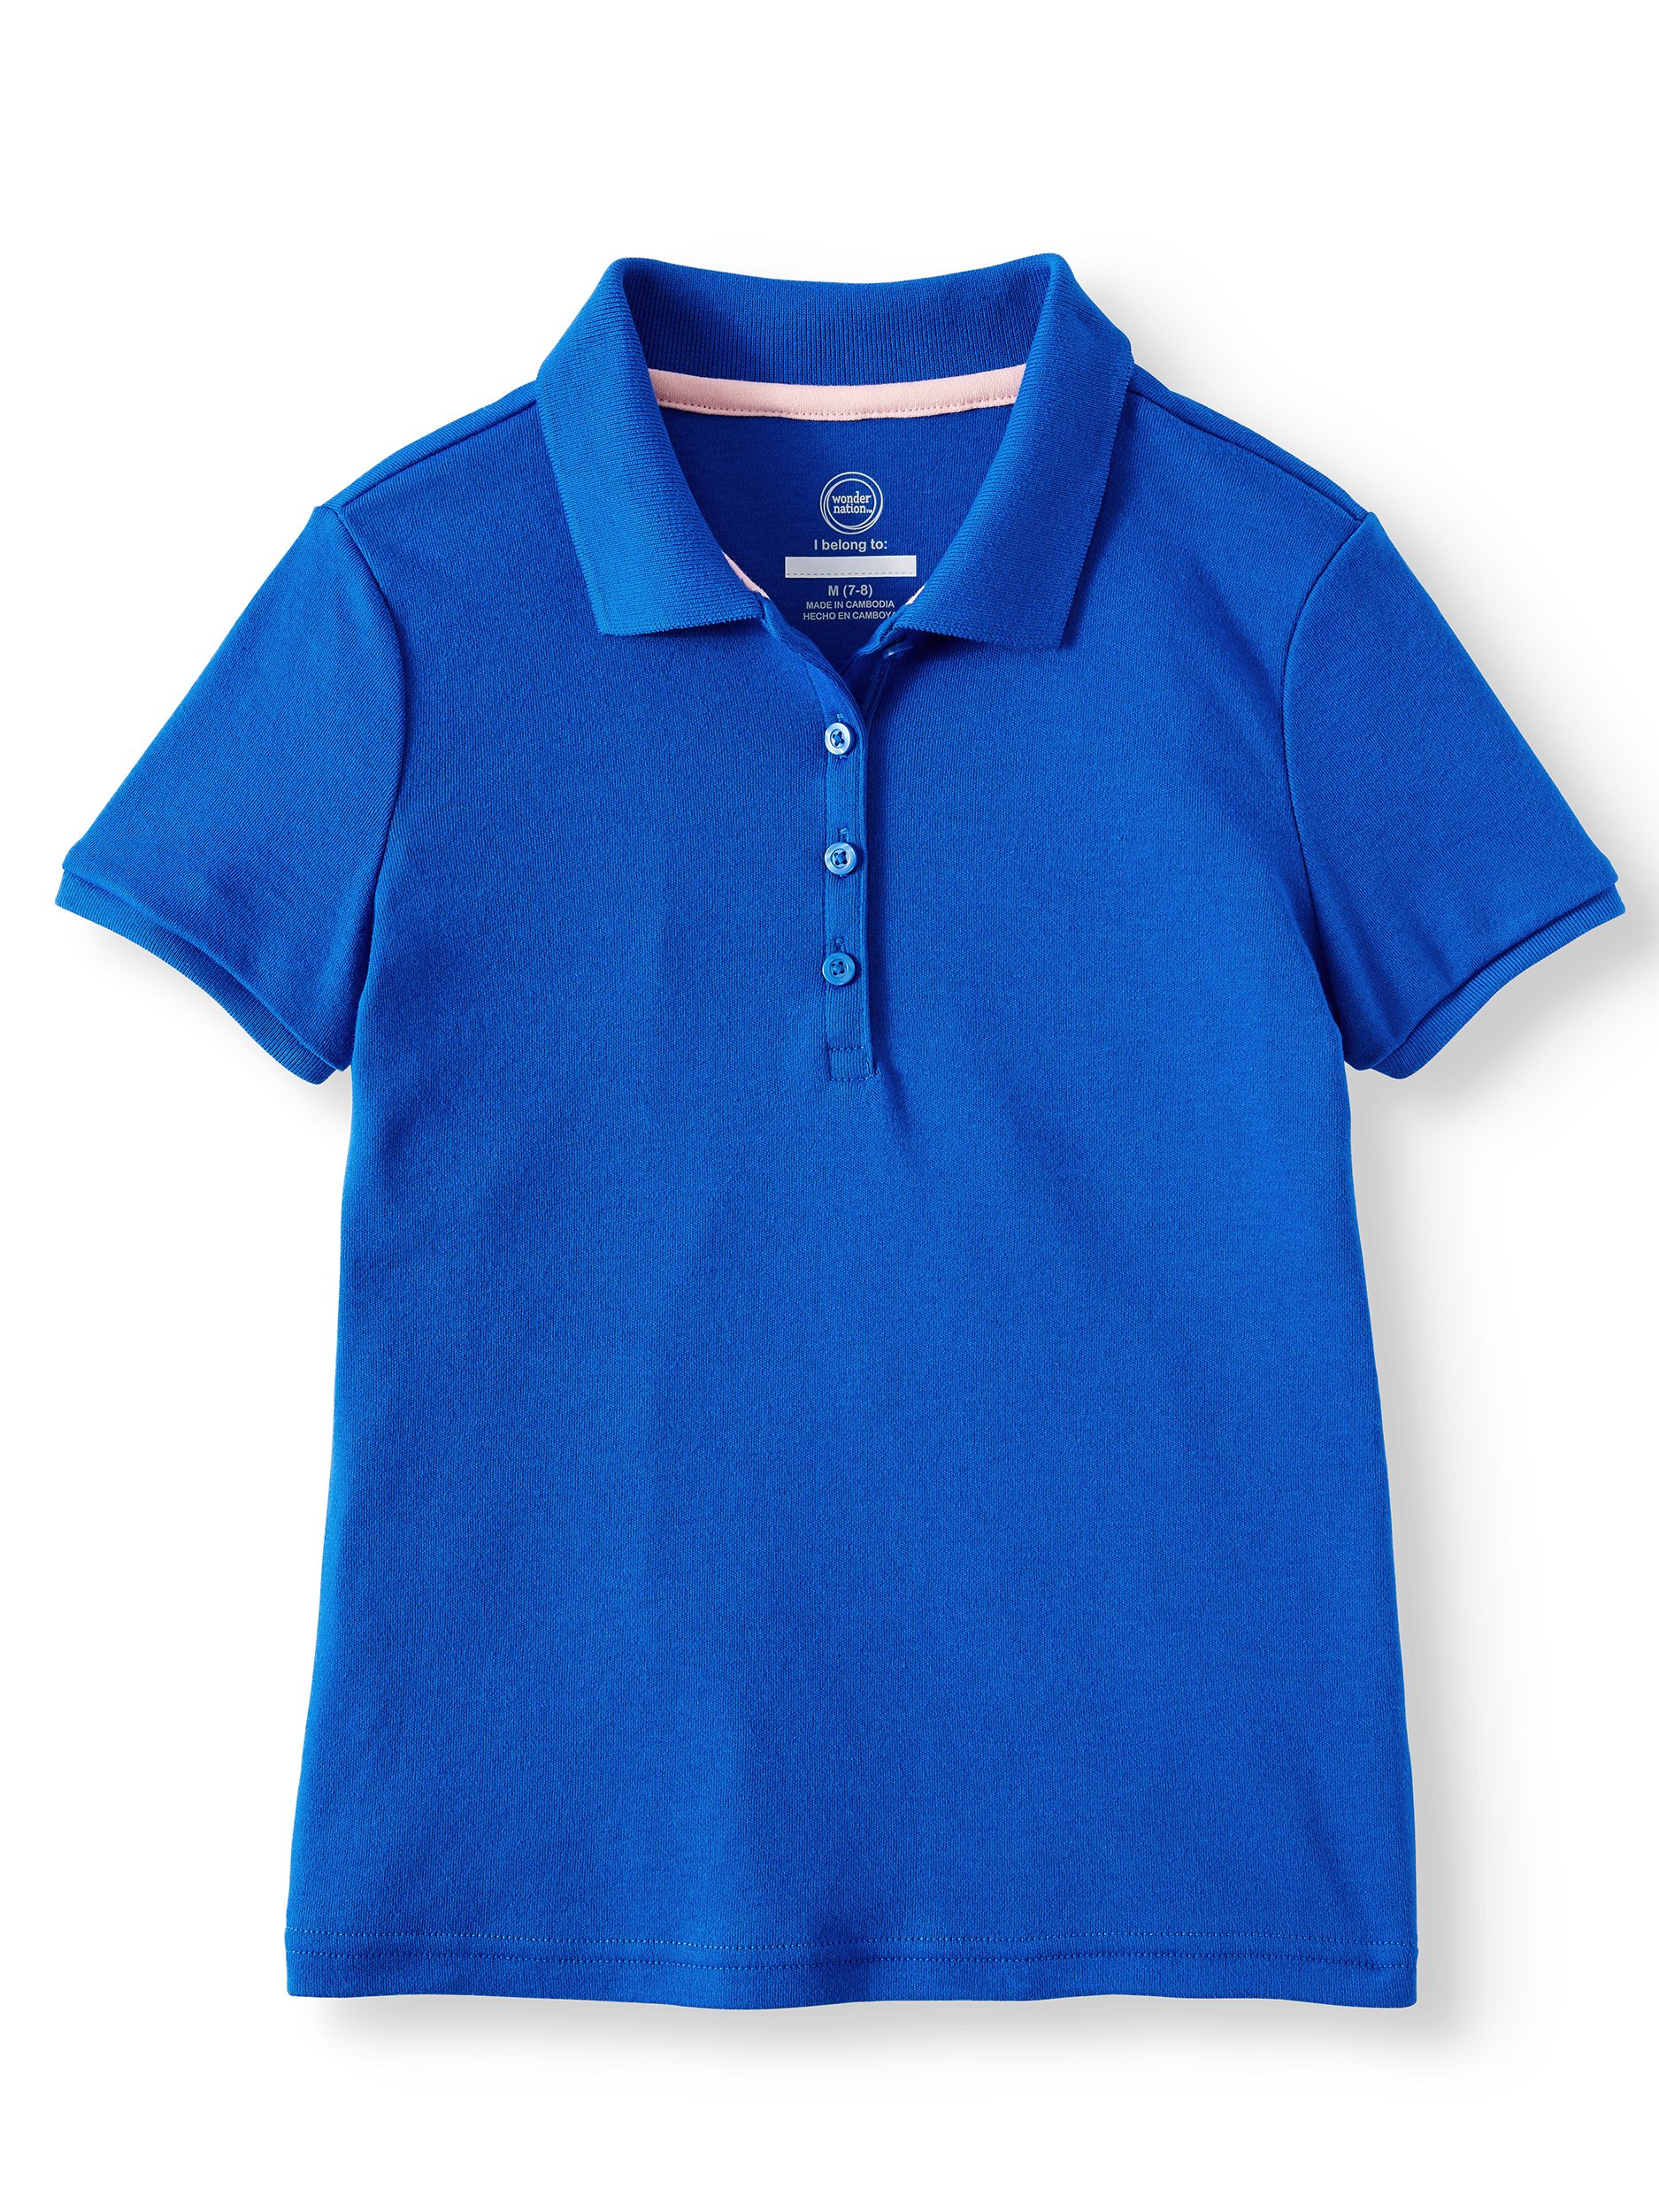 Wonder Nation Girls School Uniform Short Sleeve Interlock Polo Shirt, 2-Pack Value Bundle, Sizes 4-18 - image 4 of 5